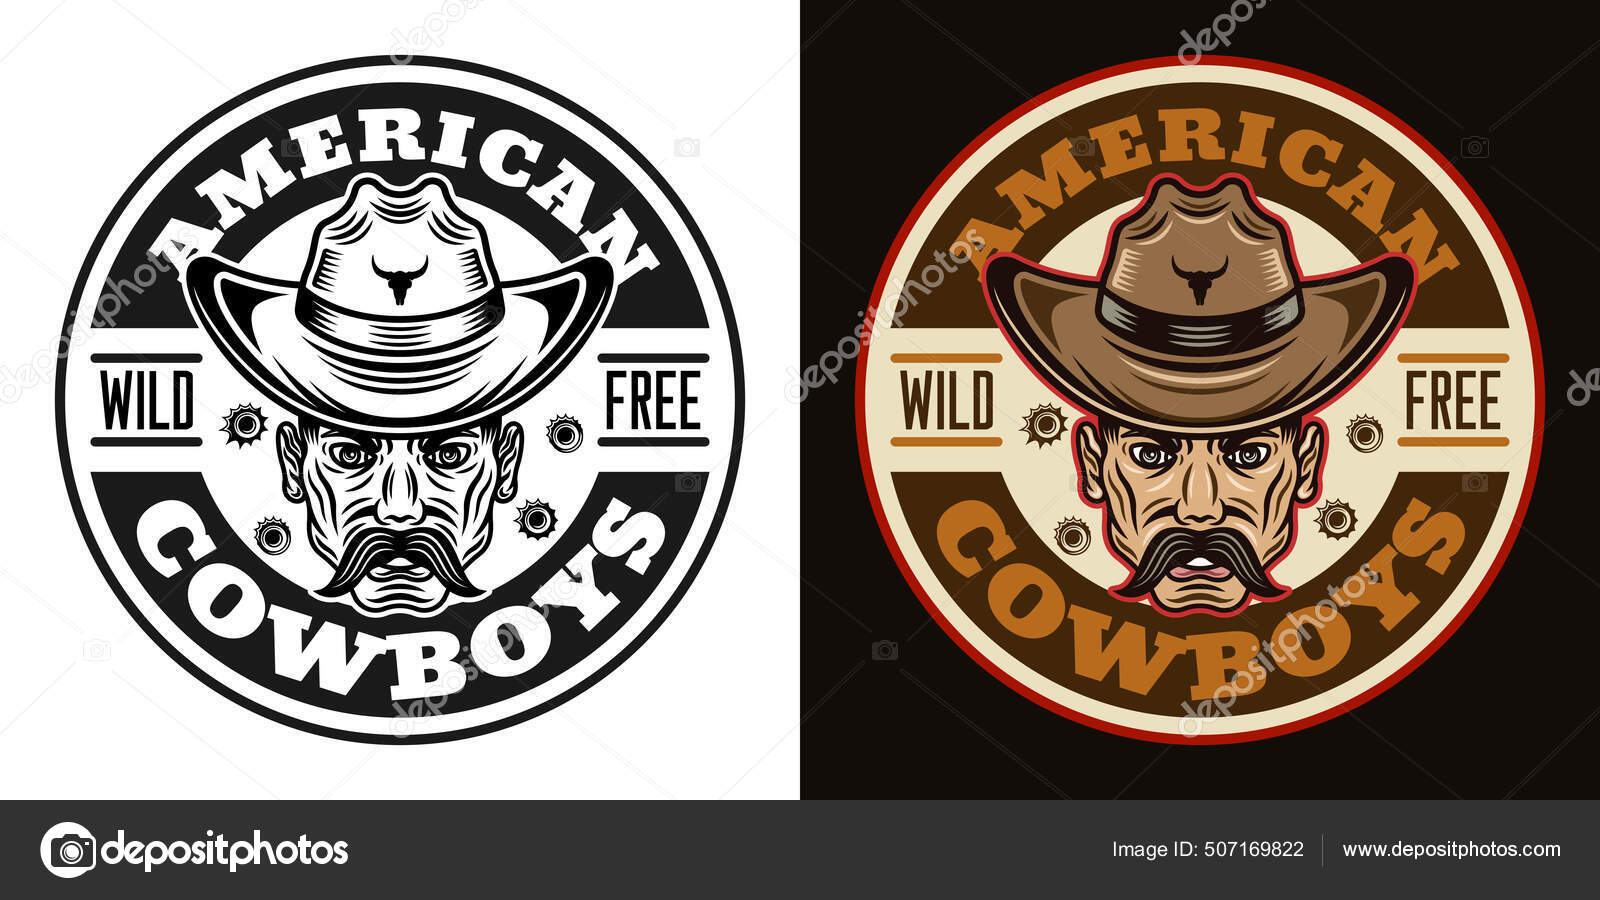 Cowboys vector vintage round emblem, label, badge or logo